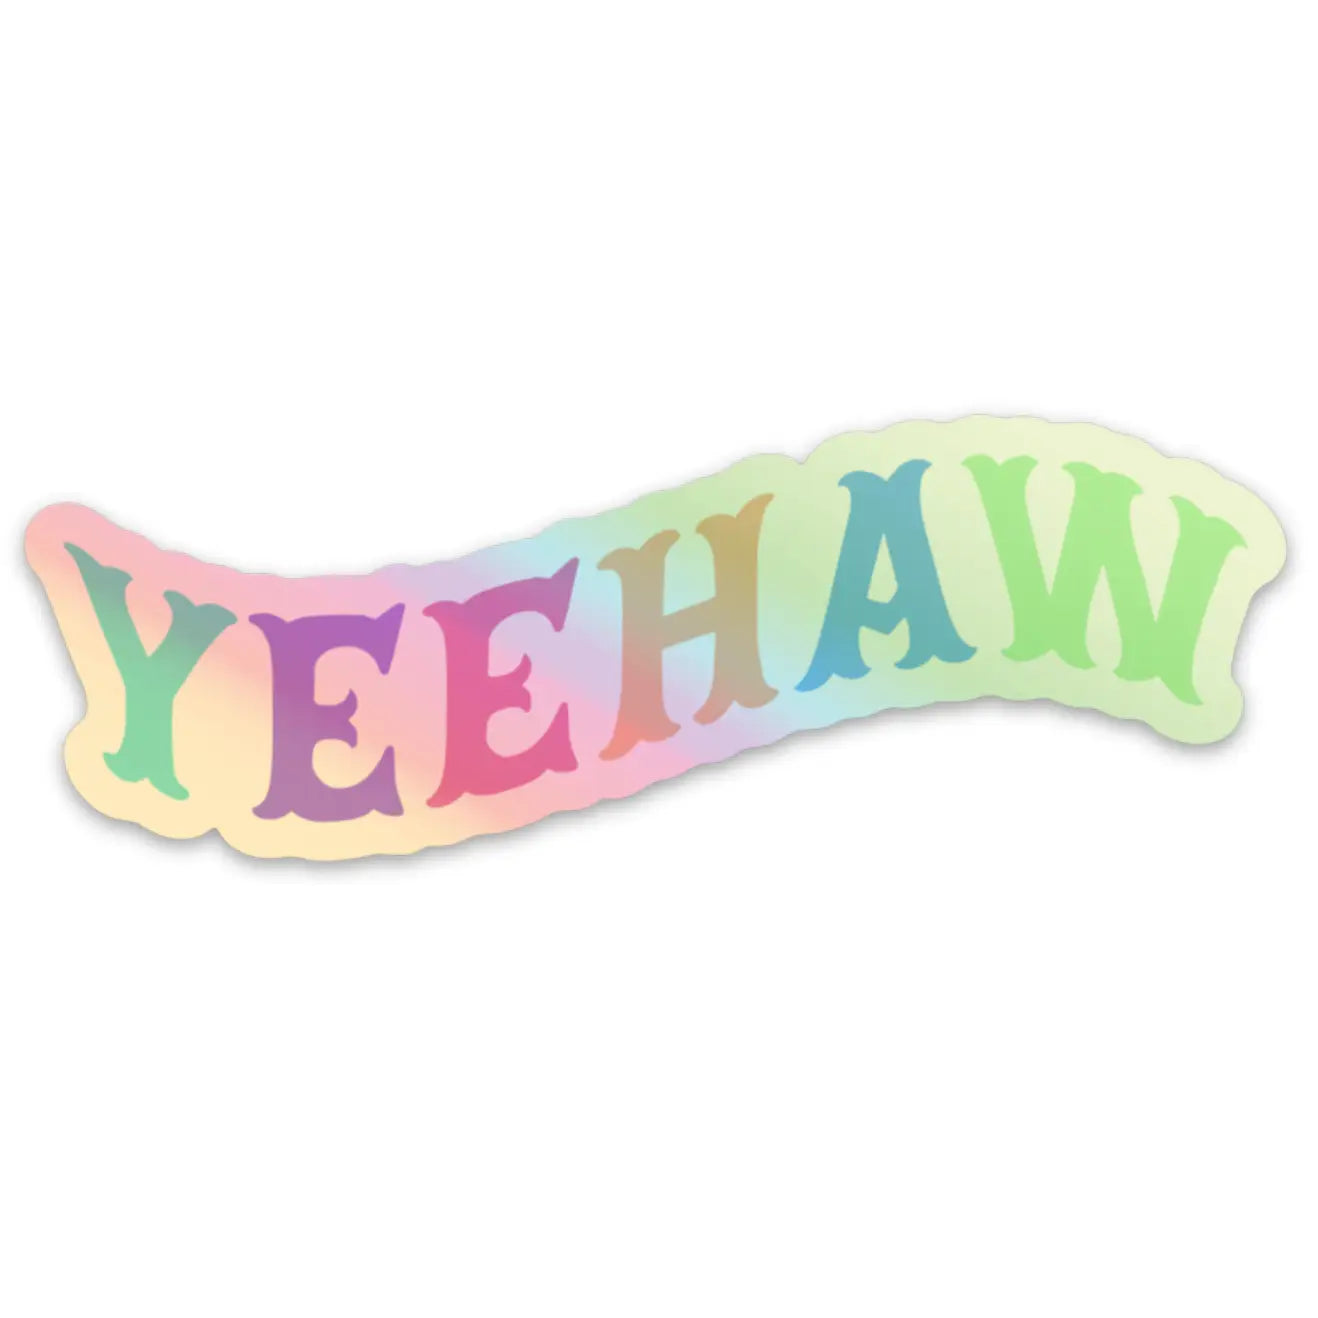 Yeehaw sticker